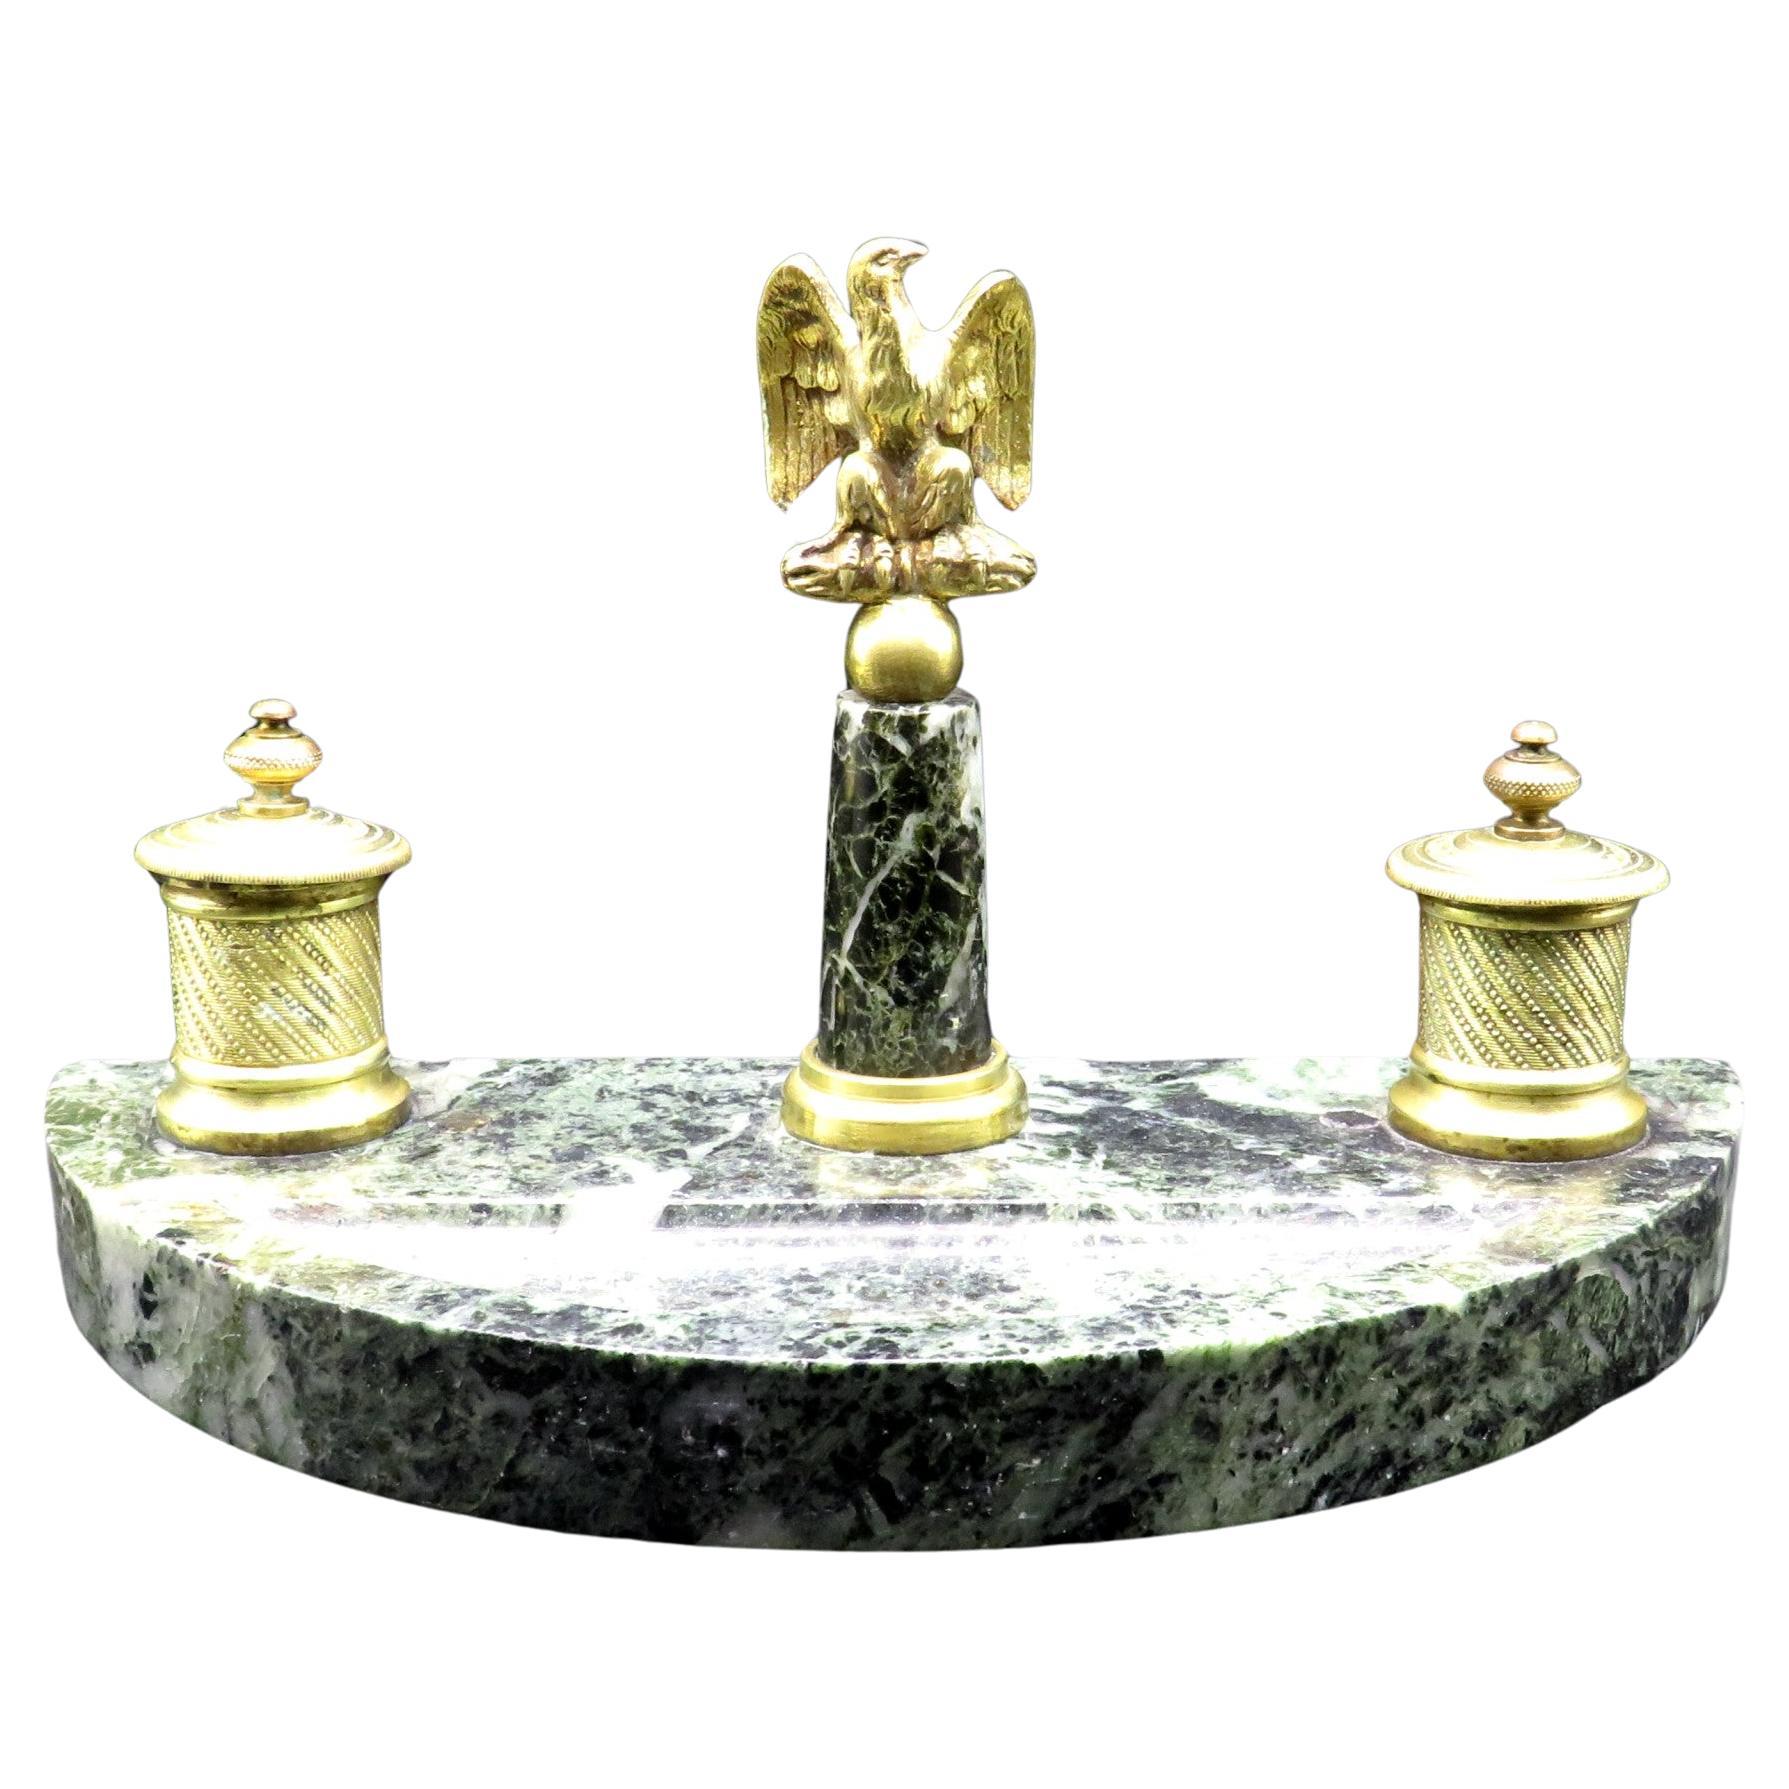 Très bon encrier en bronze doré et marbre Napoléon III du 19e siècle, vers 1870 